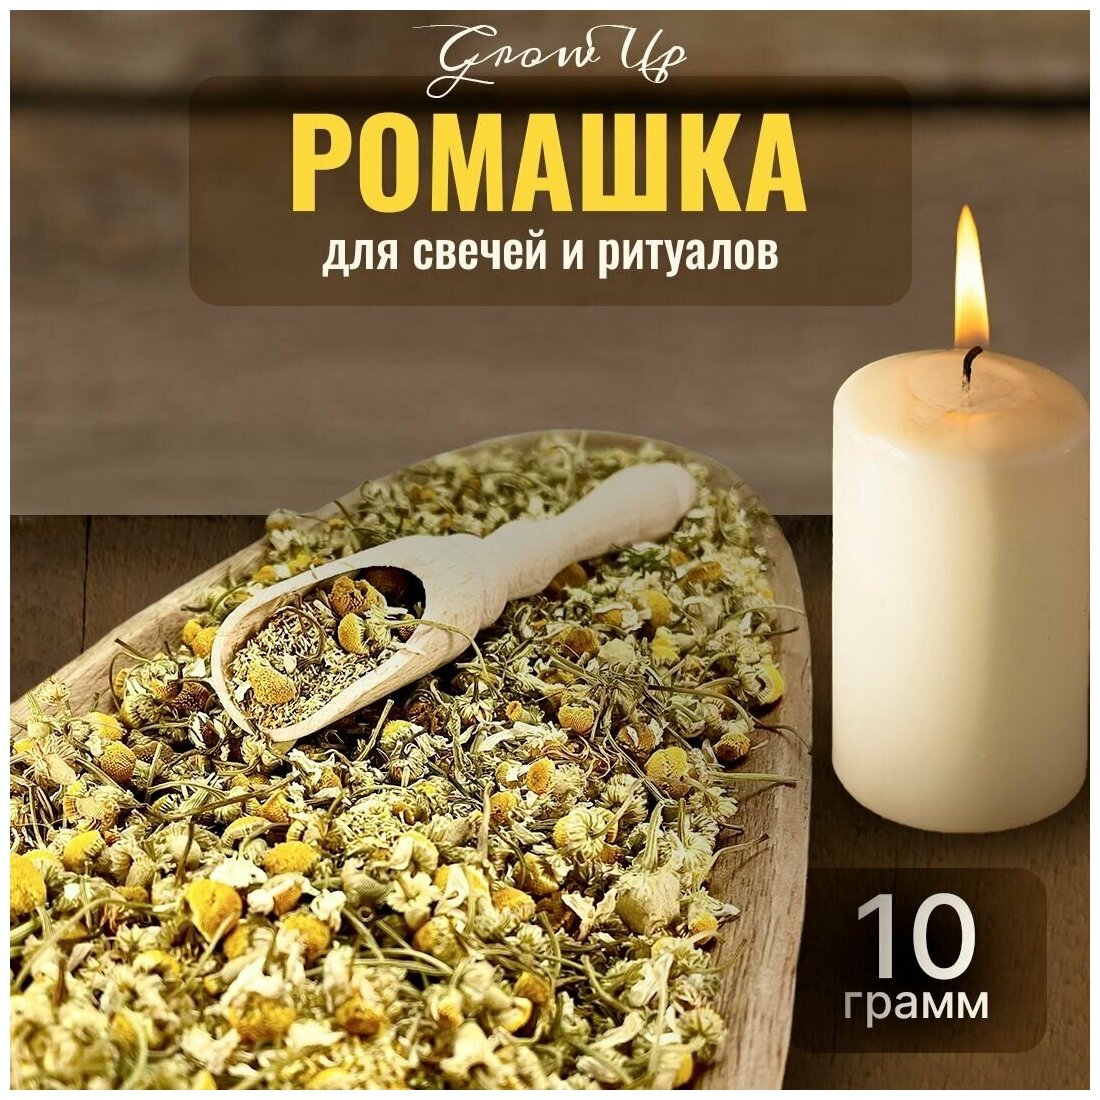 Сухая трава Ромашка (цветы) для свечей и ритуалов, 10 гр